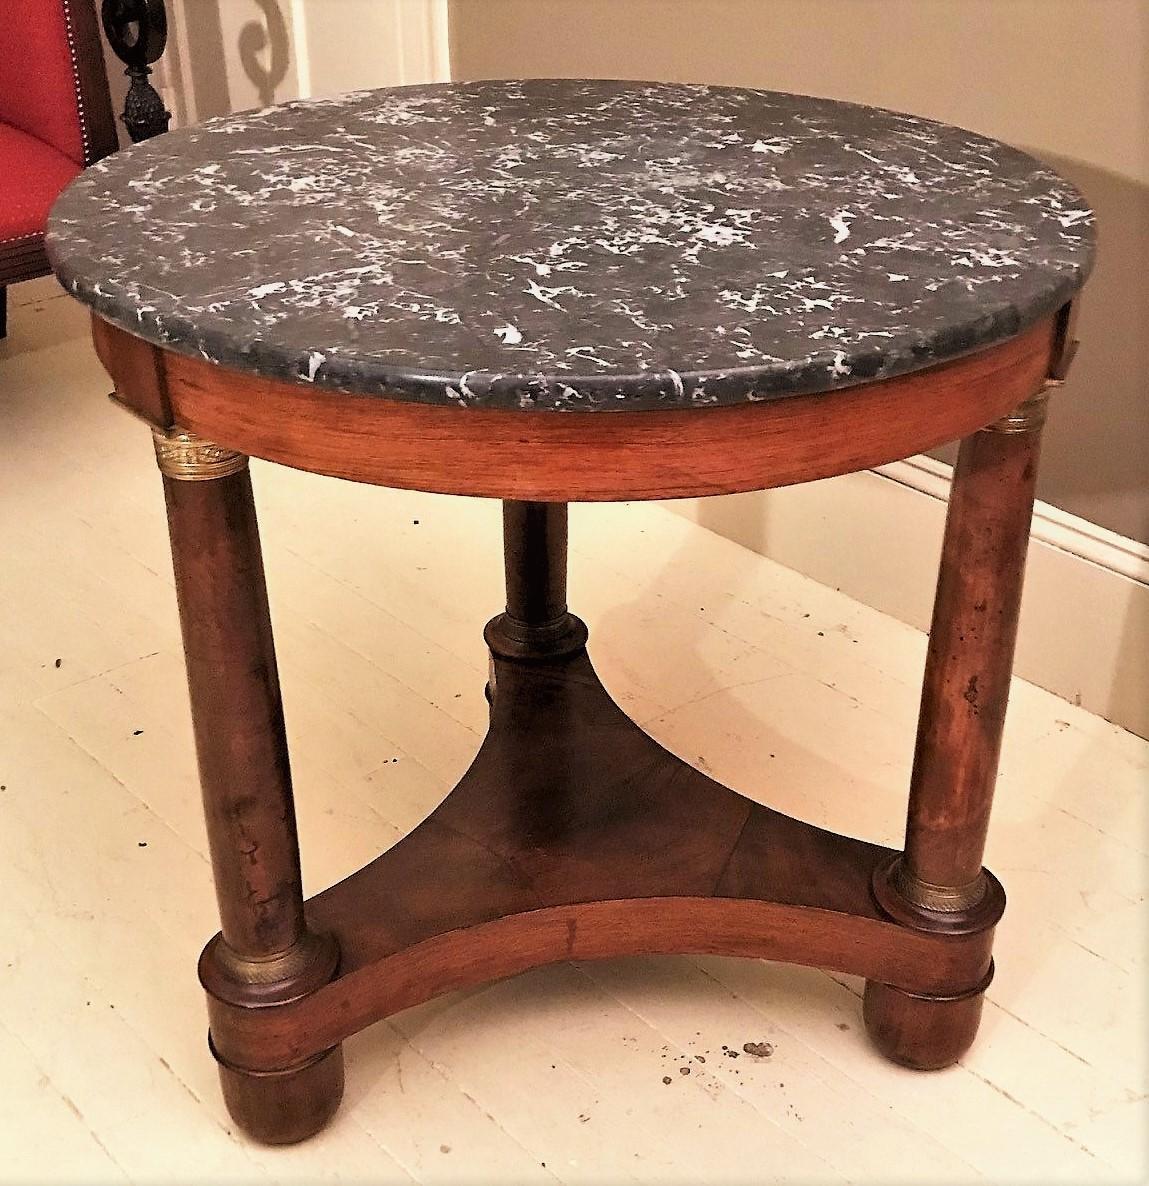 Cette table est un excellent exemple du design des meubles napoléoniens, et est également très utile dans la maison d'aujourd'hui. Parfait comme table centrale dans un foyer ou comme table d'appoint dans le salon. Sa petite taille et sa forme ronde